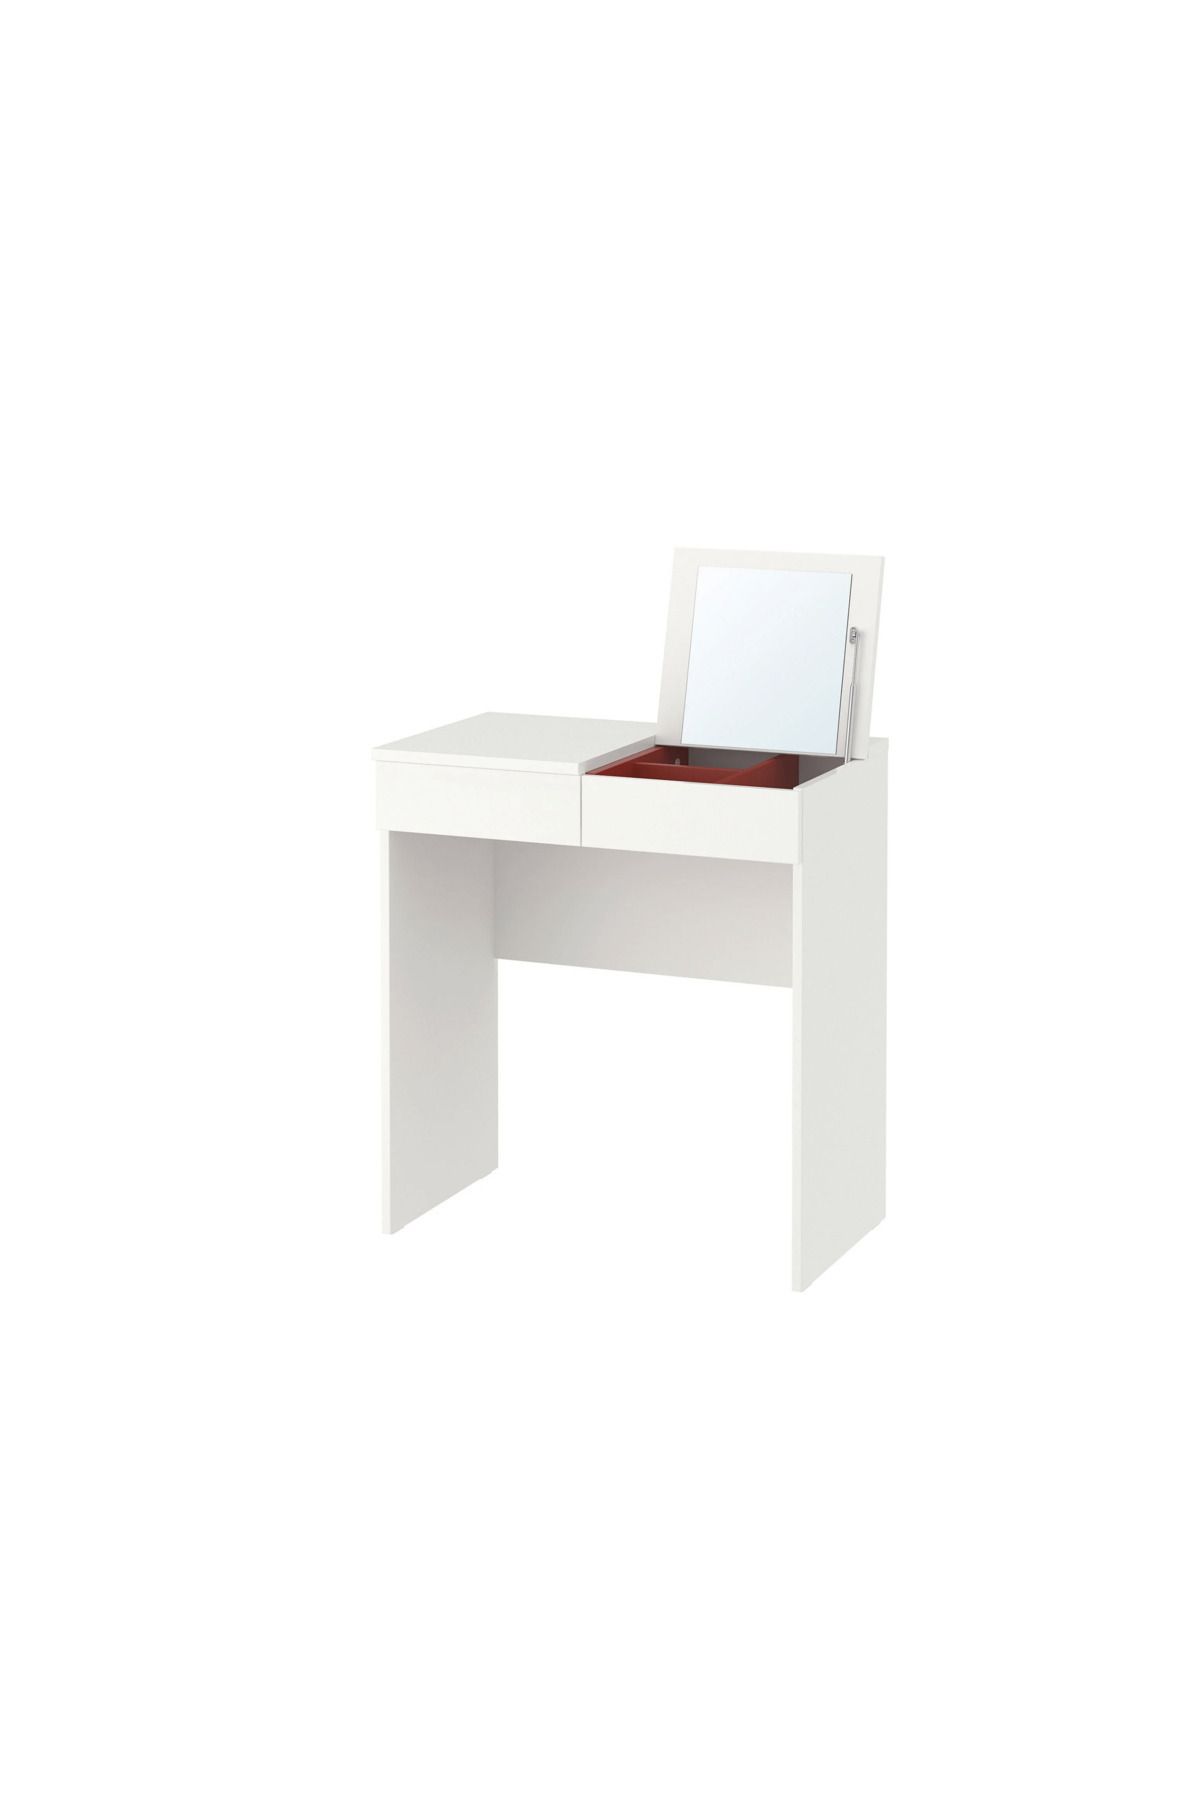 IKEA BRIMNES makyaj masası, beyaz, 70x42 cm